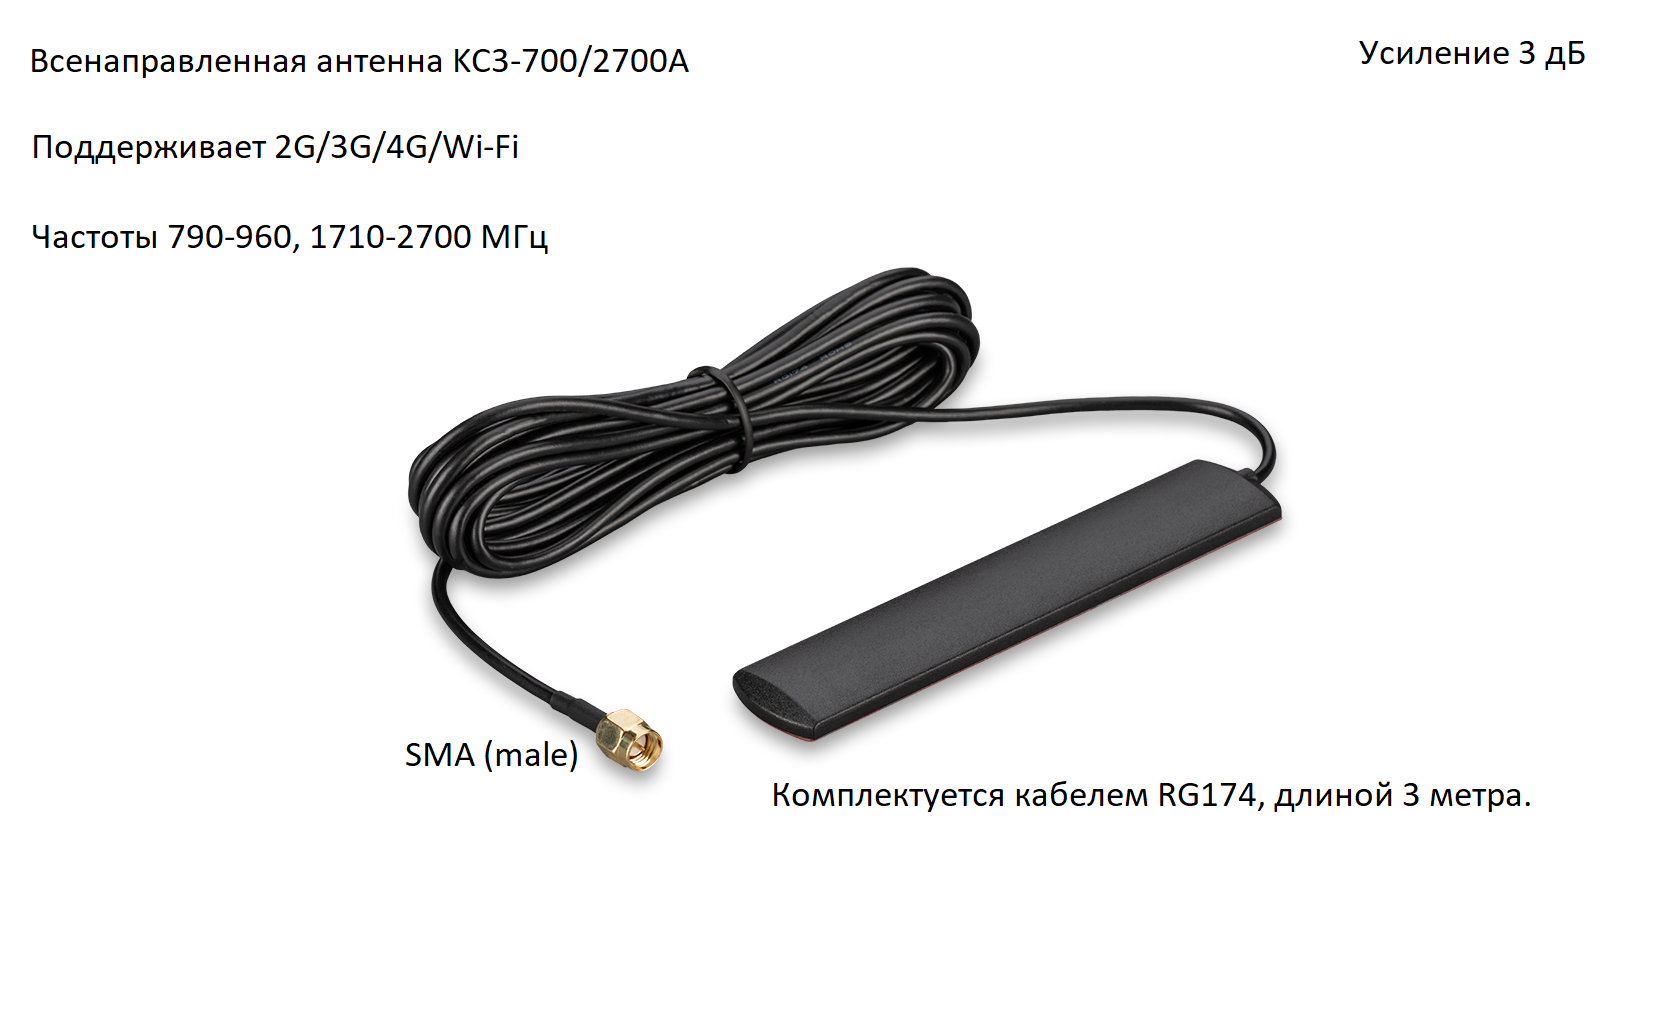 Антенна всенаправленная 2G/3G/4G/Wi-Fi с самоклеящимся основанием, 3 дБ, KROKS KC3-700/2700A SMA (male)